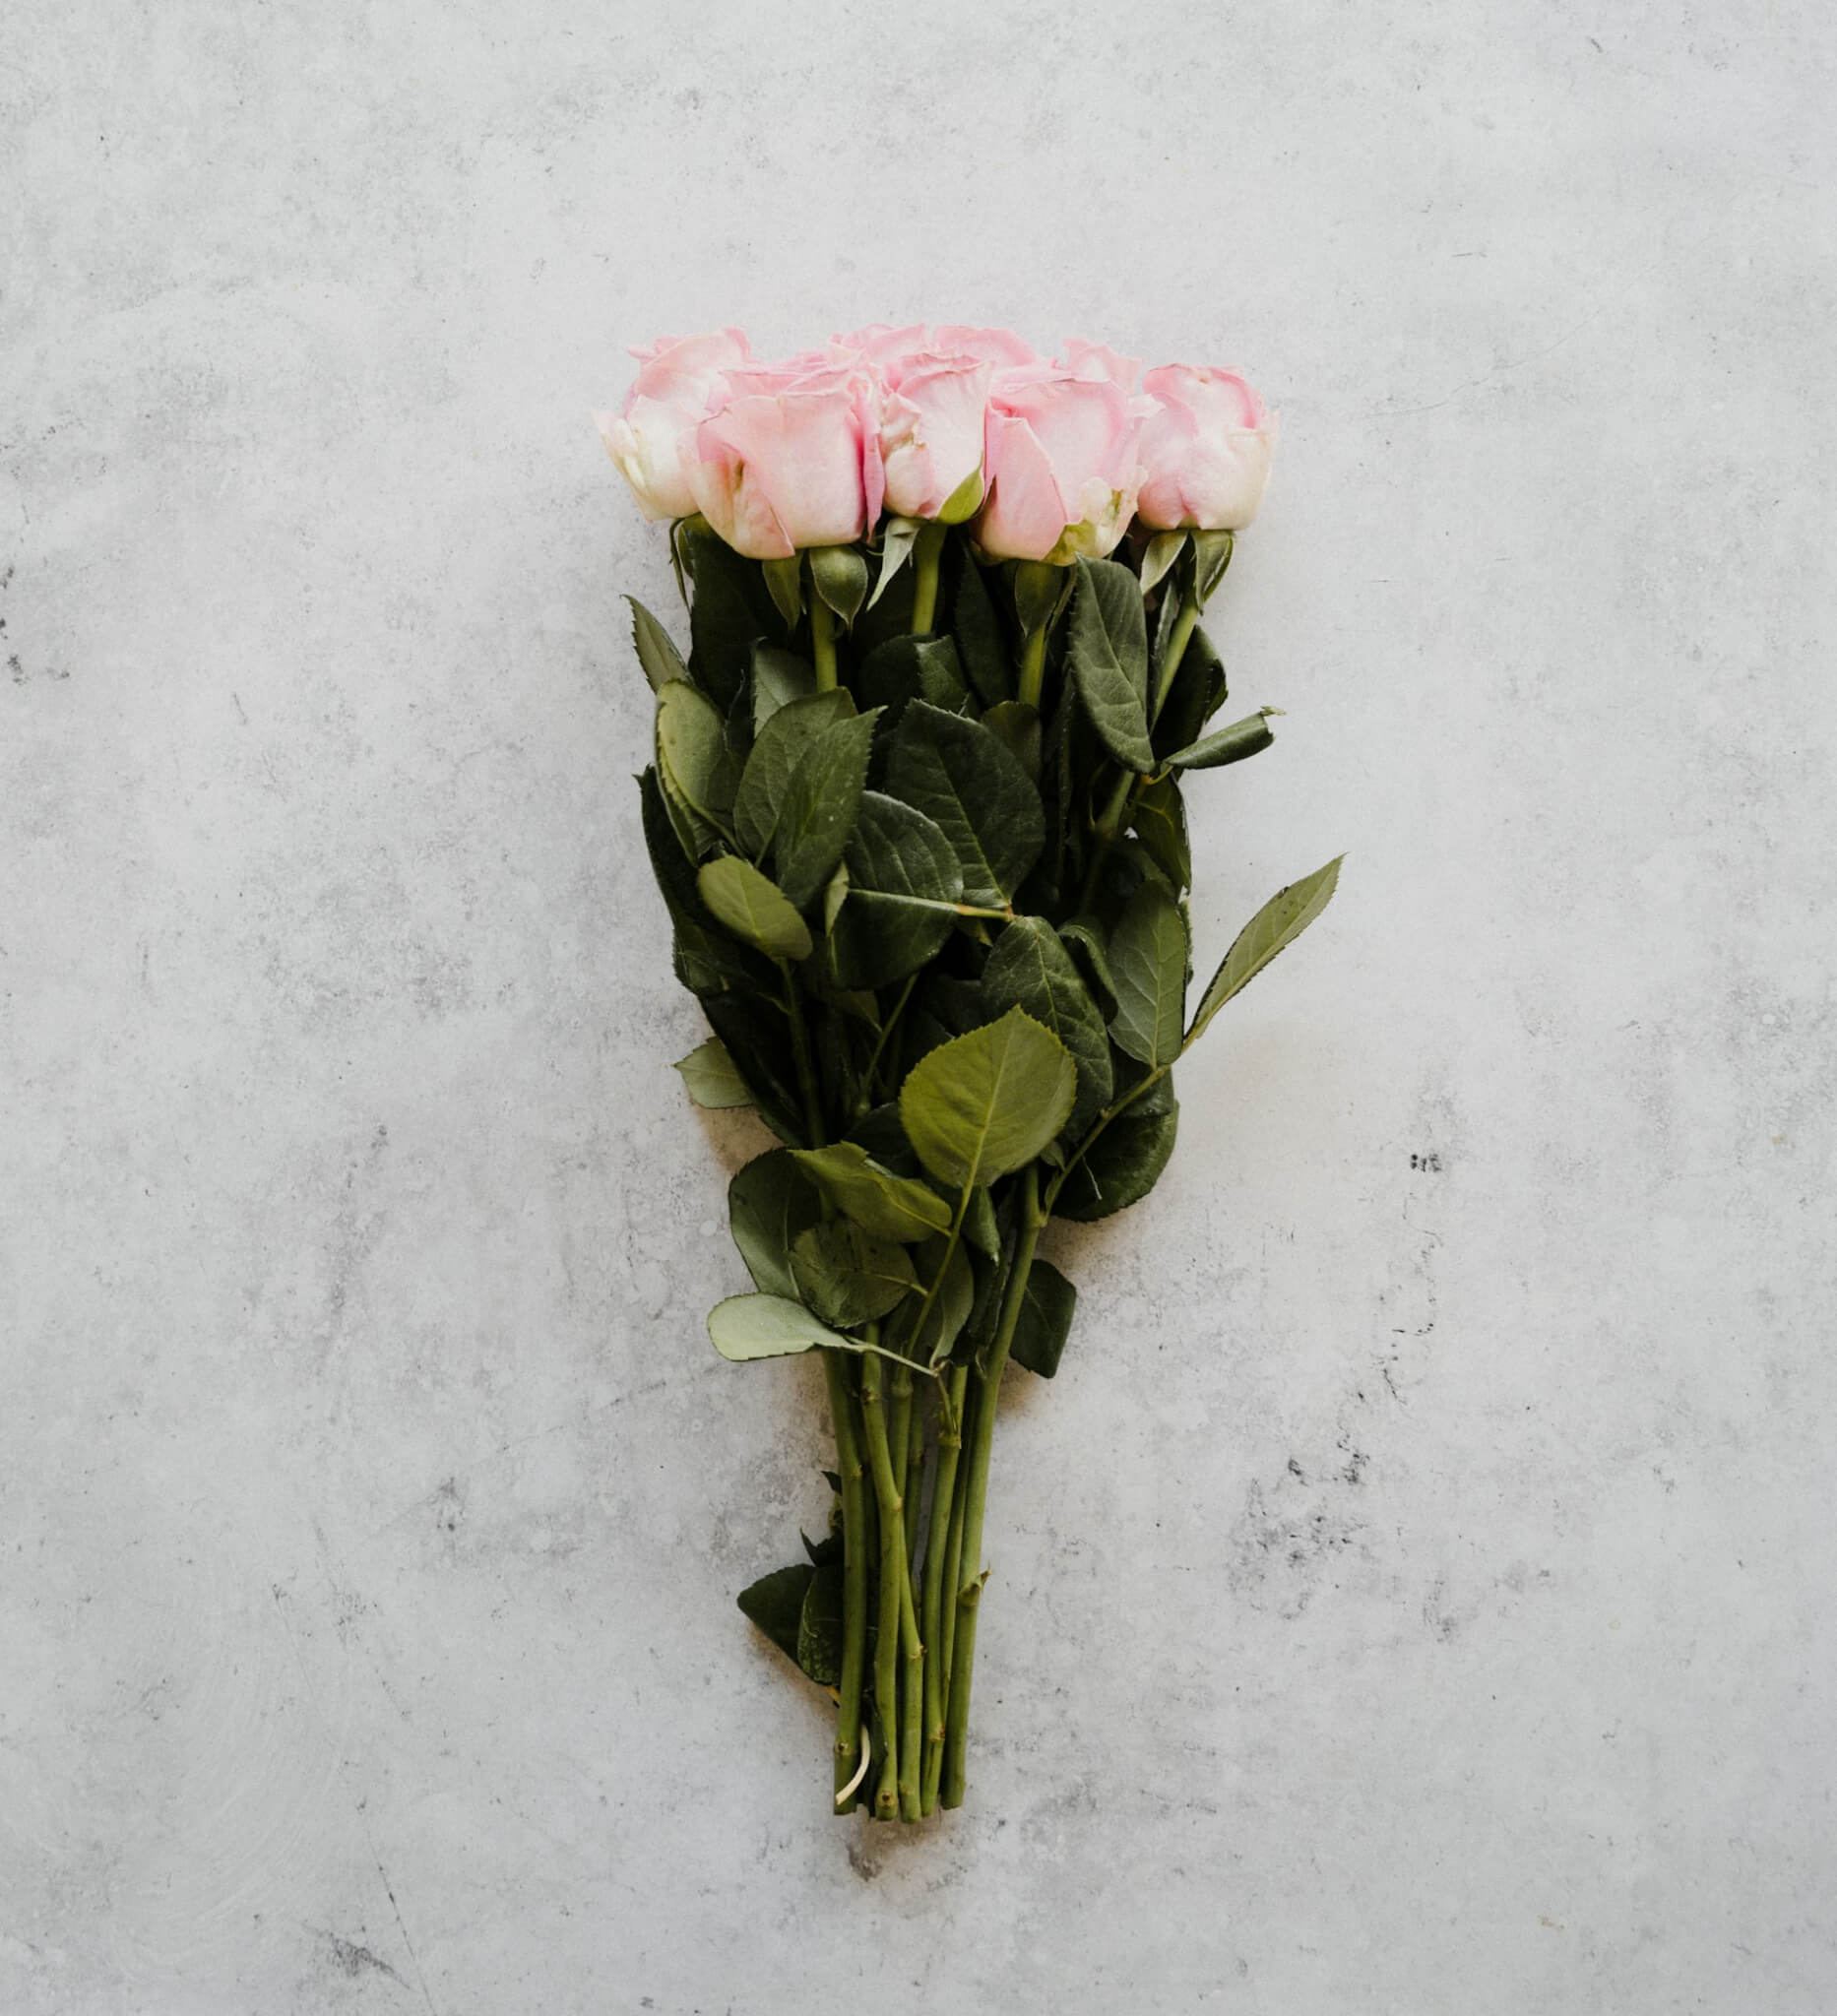 San Valentino, "lascia che ci pensi io" è il "ti amo" scritto coi petali di rosa - ROSE 1 - Gay.it